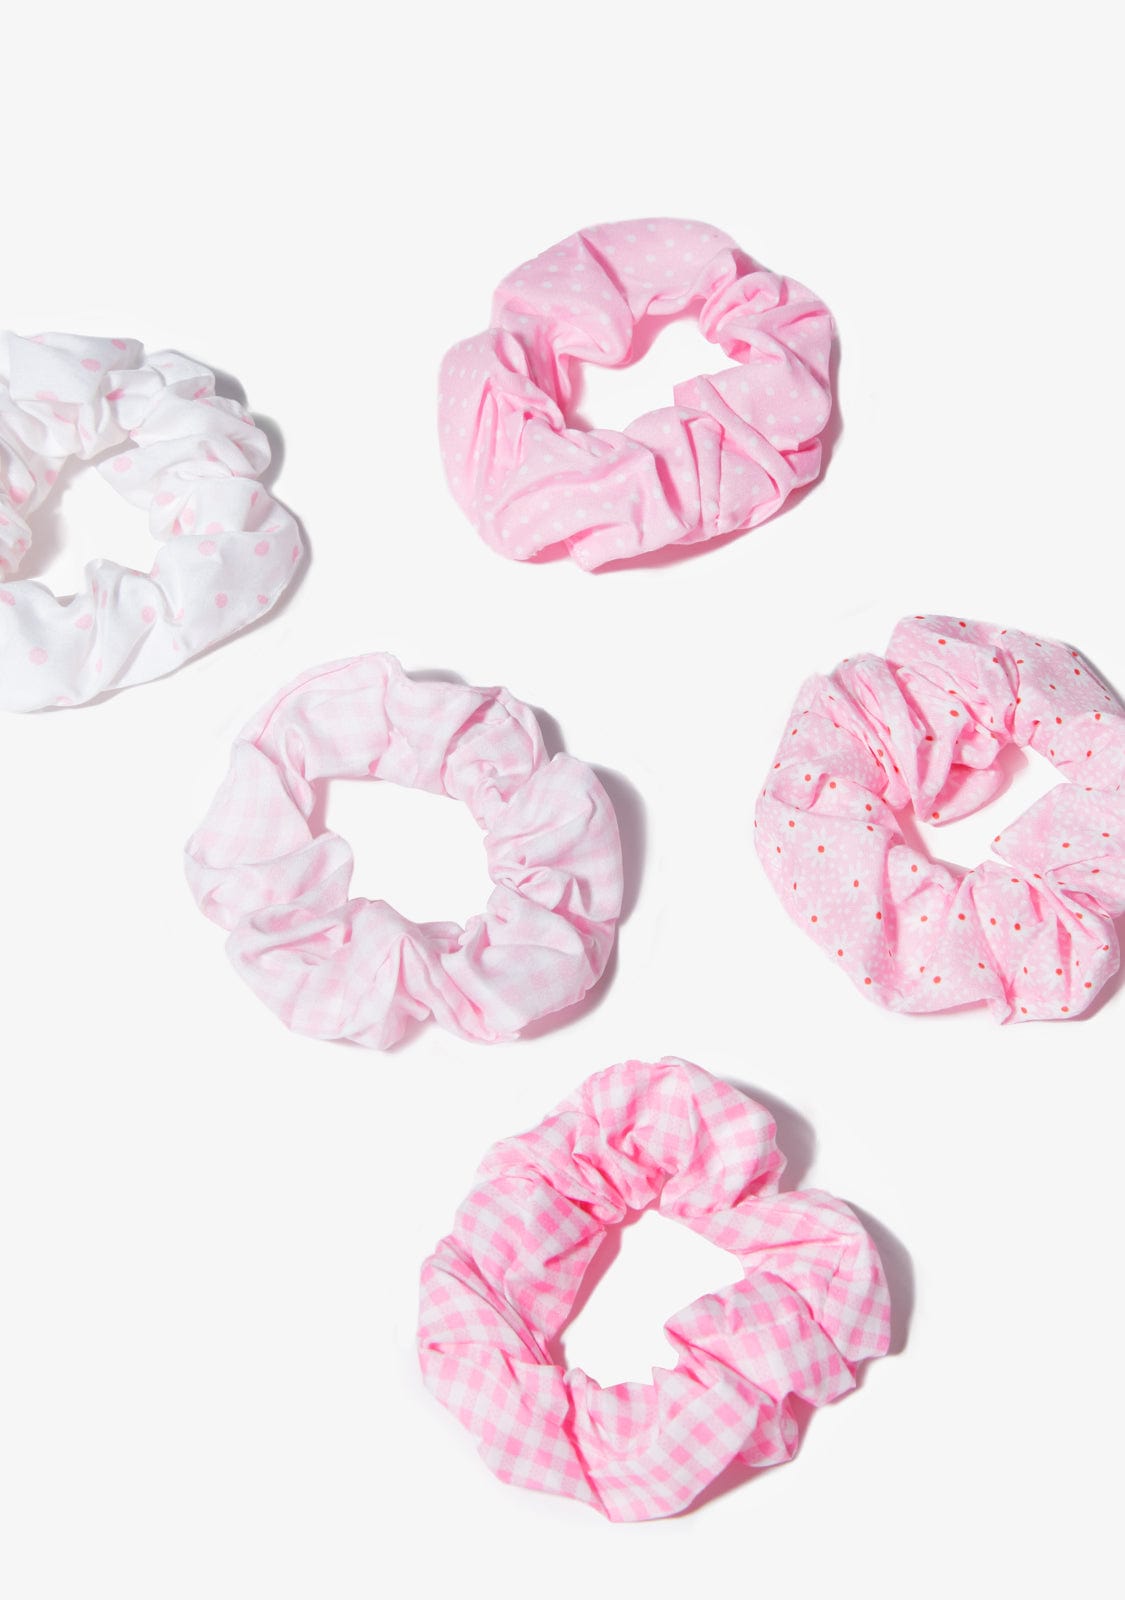 CONGUITOS TEXTIL Accessories Pink Multi Scrunchies Set